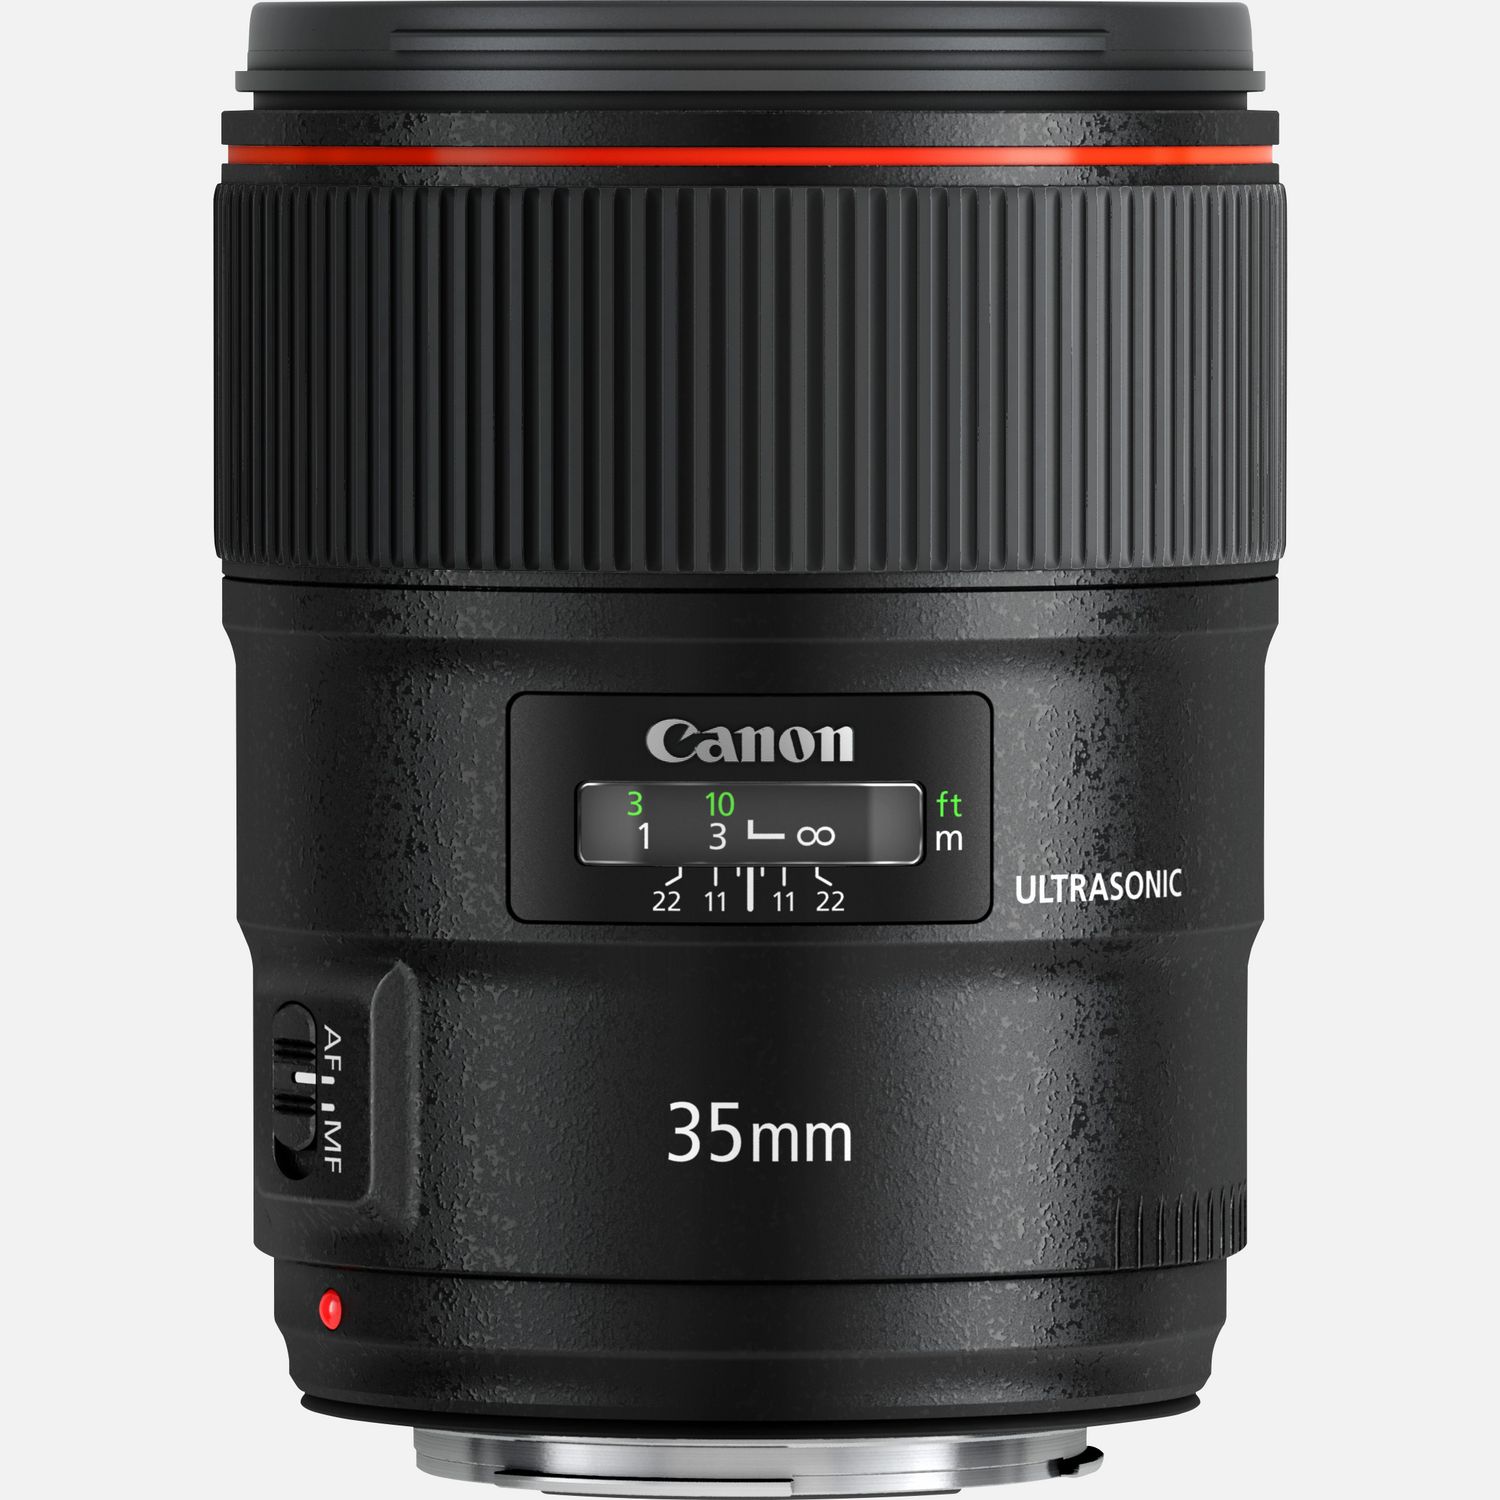 売れ筋新商品 - Canon Canon USM II F1.4L EF35mm レンズ(単焦点) - eccdcouncil.gov.ph